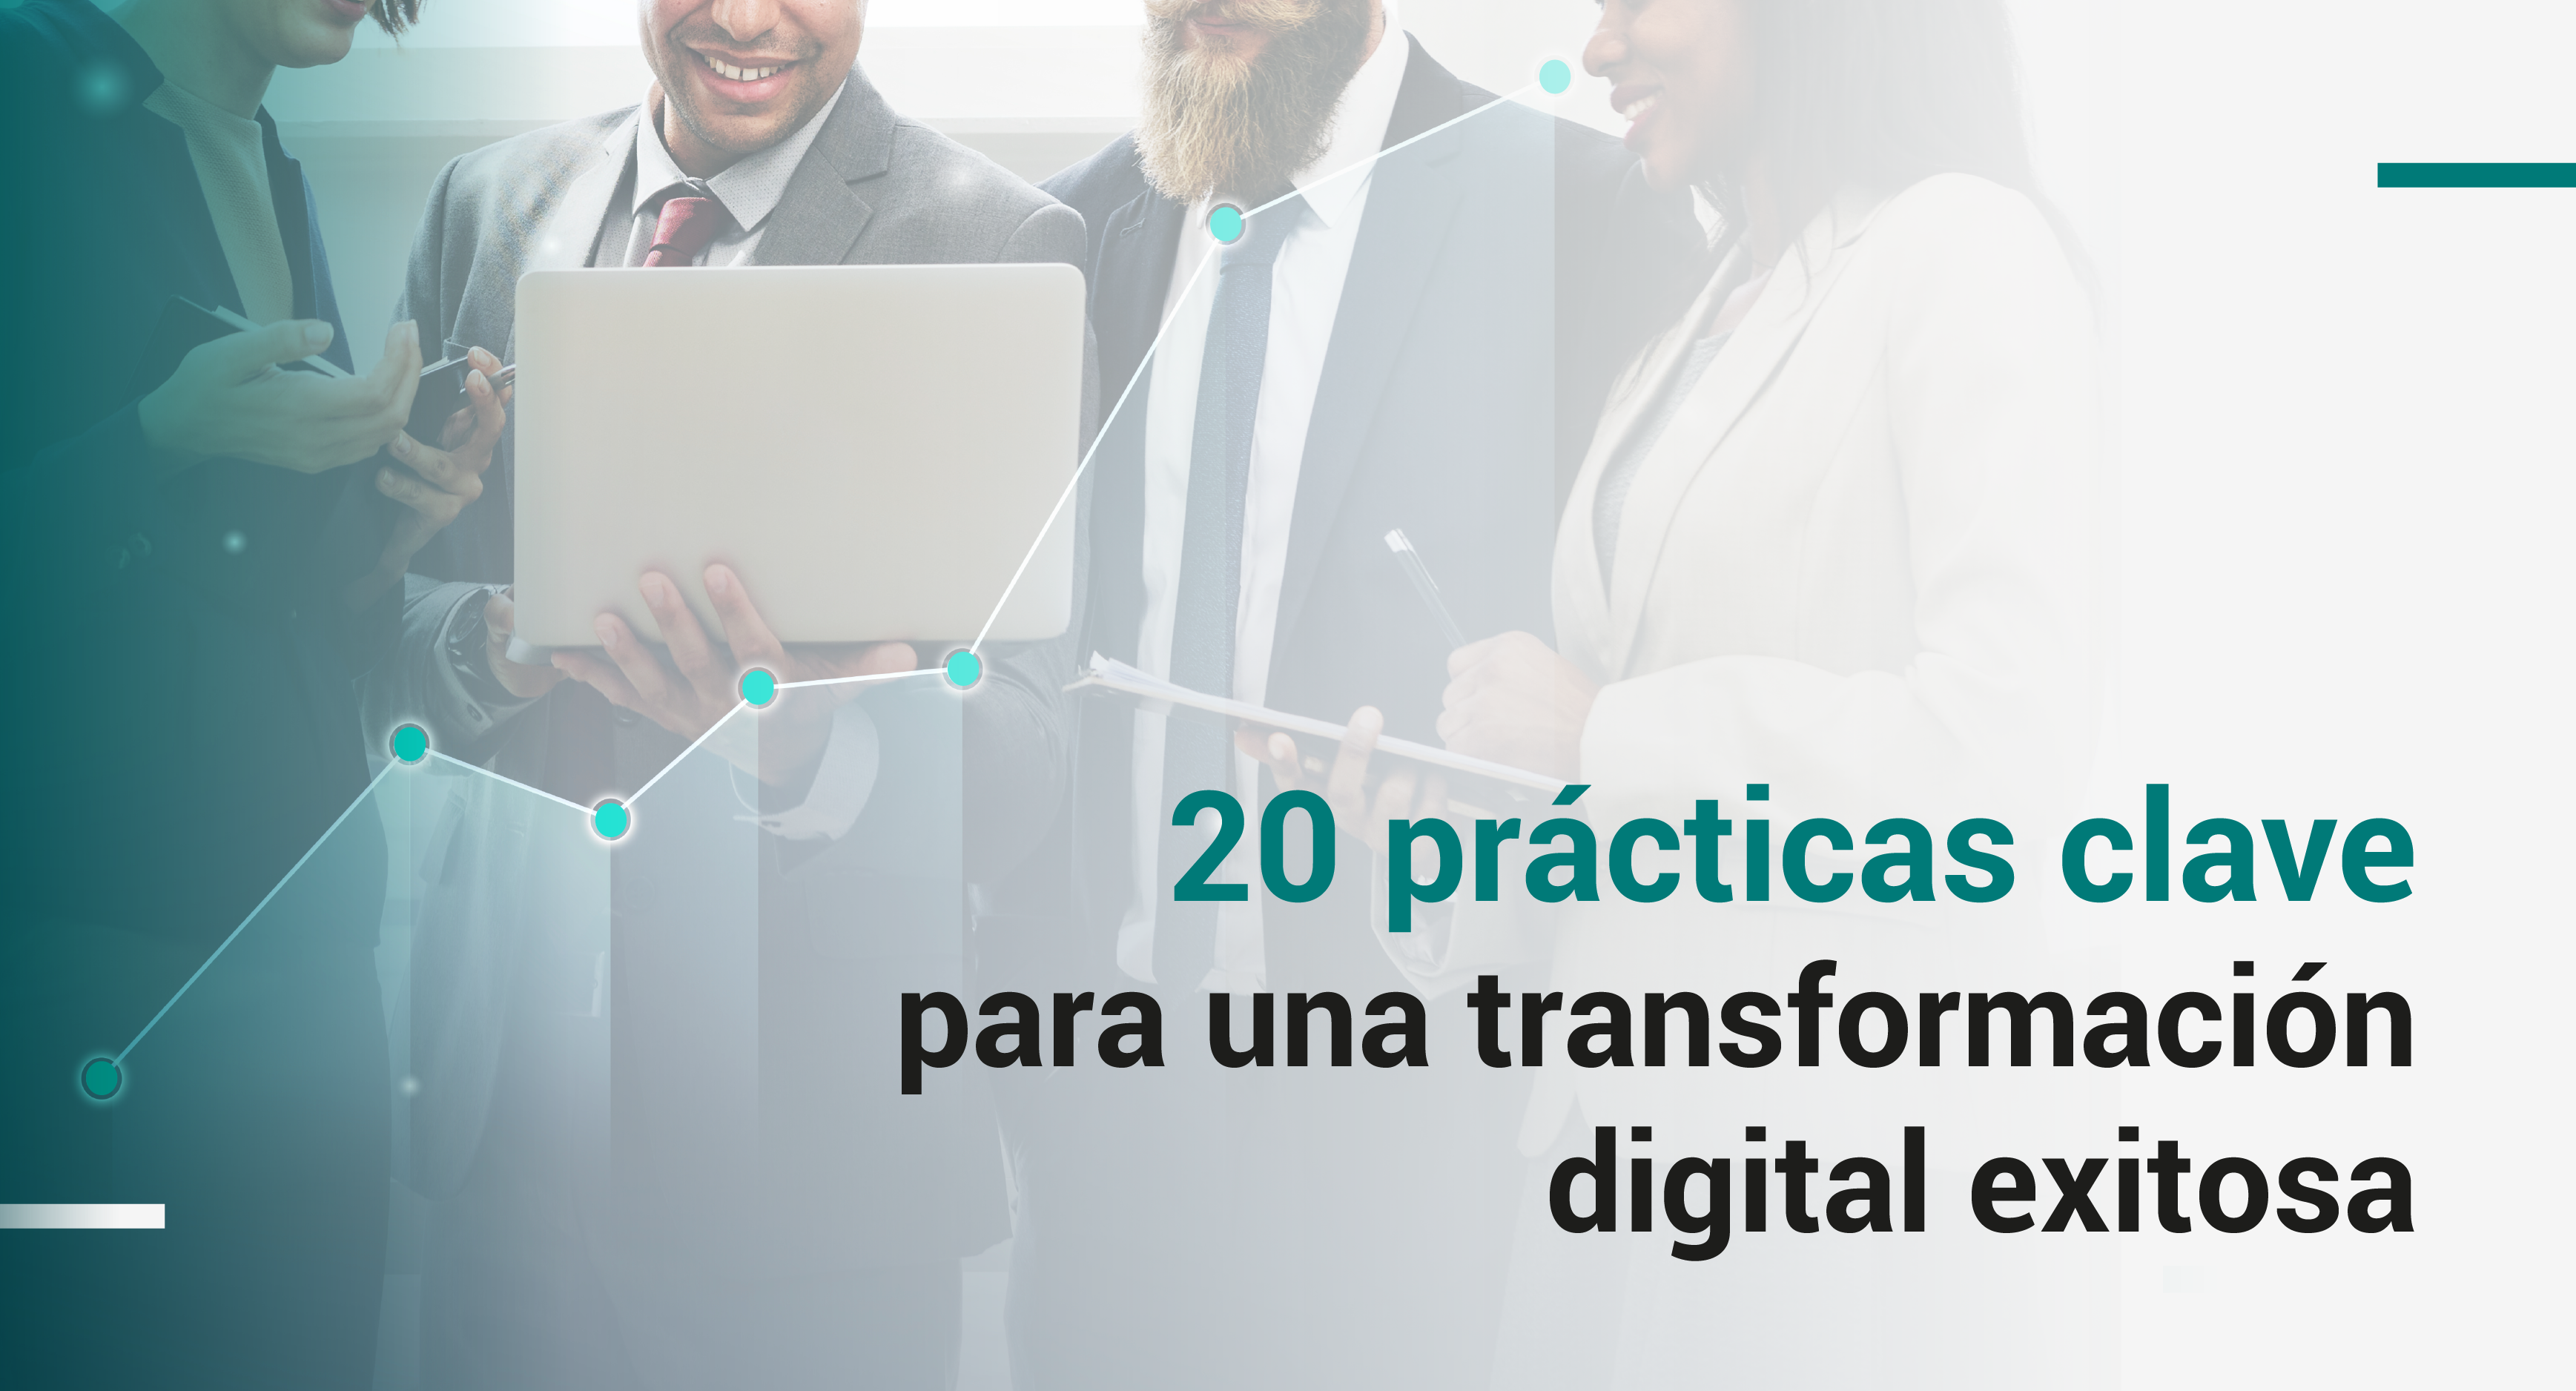 Las 20 prácticas clave para una transformación digital exitosa